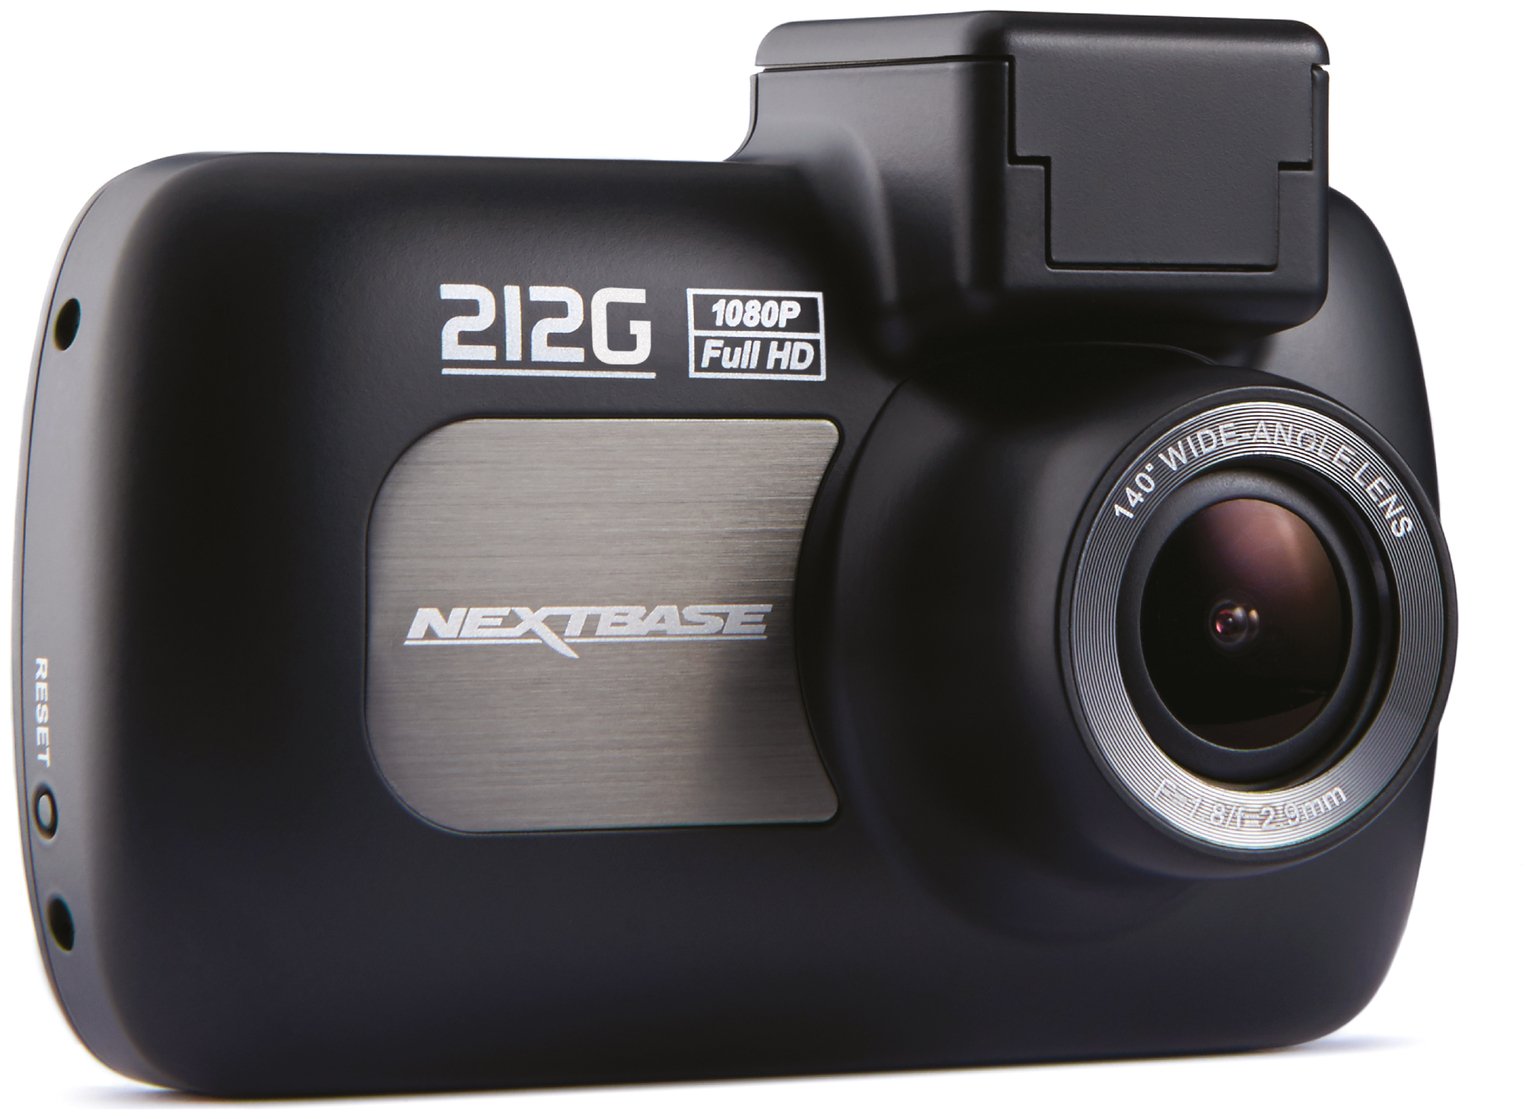 Nextbase 212G HD Dash Cam